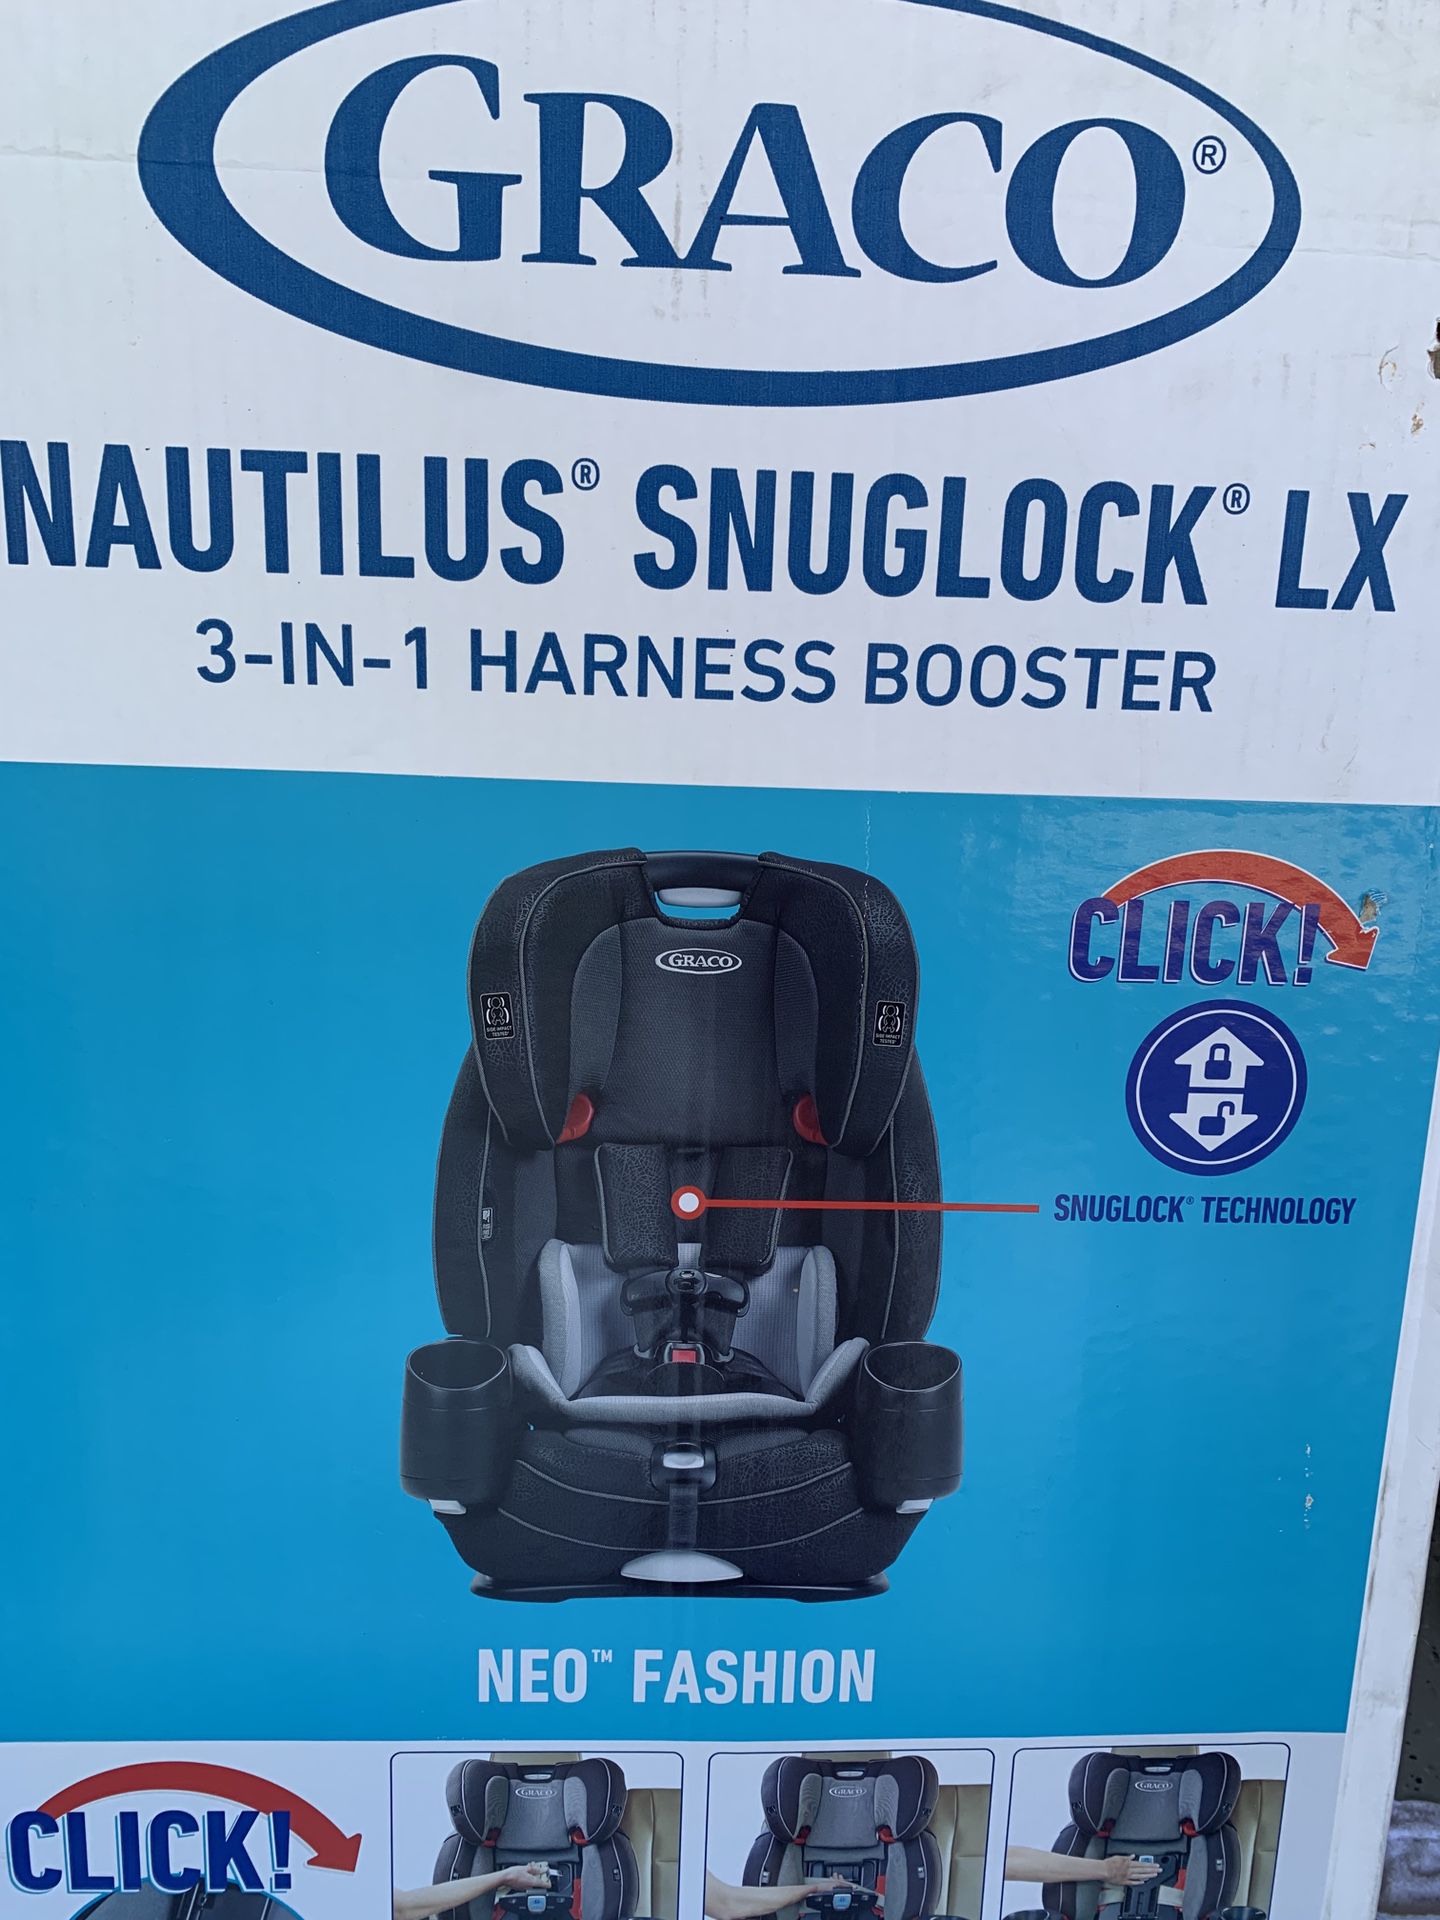 Graco Nautilus Snuglock LX car seat